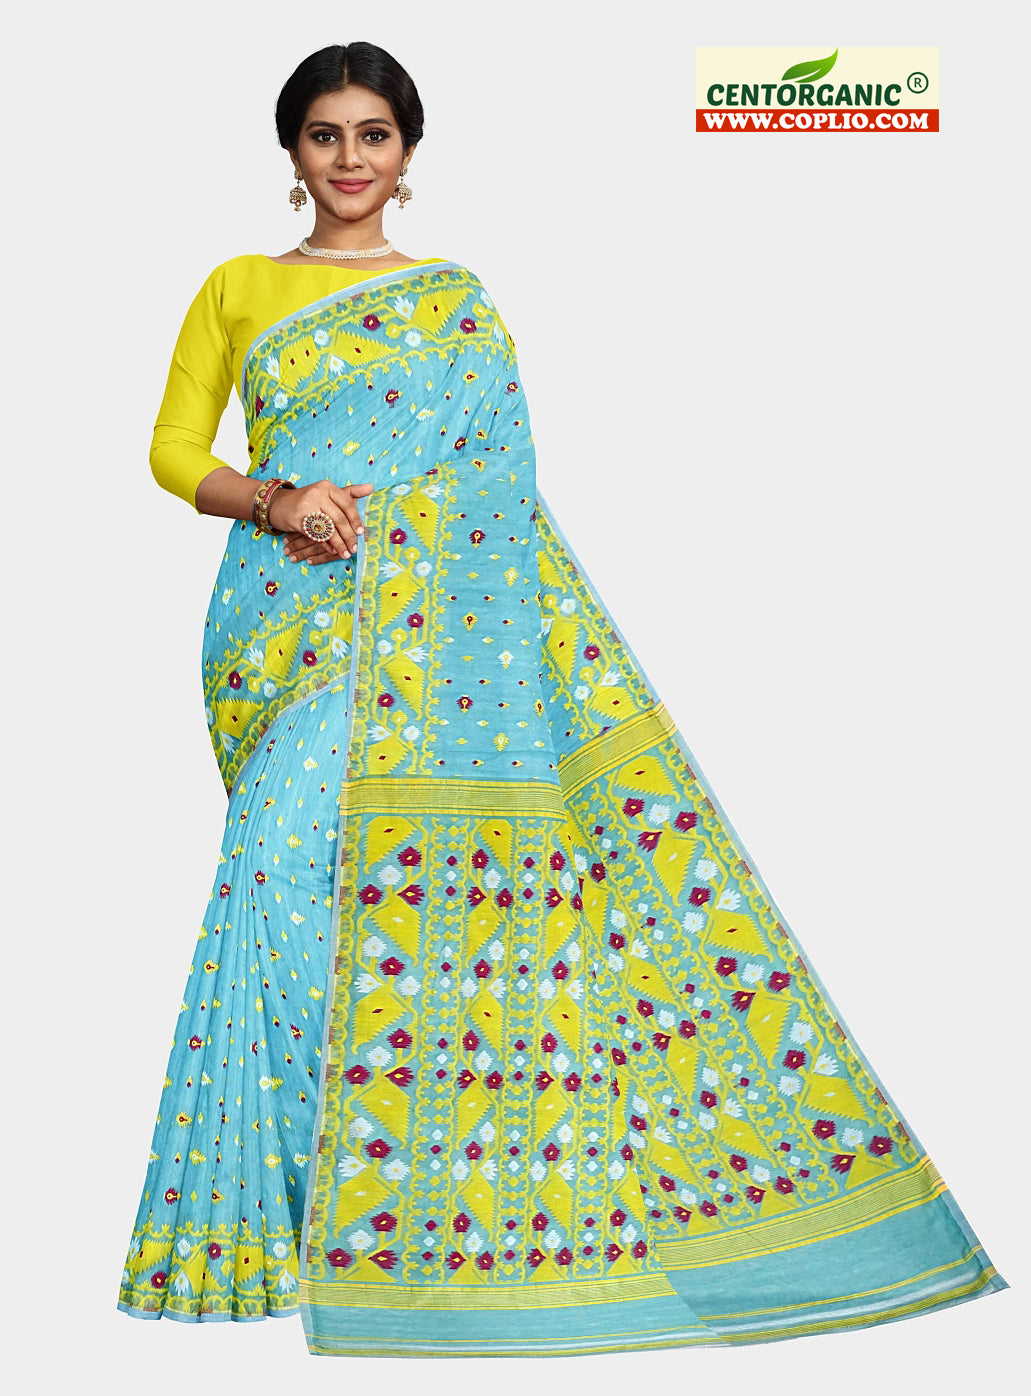 Centorganic Dhakai Soft Jamdani Bengal saree for women, All Over Weaving Korat Design, Without Blouse Piece